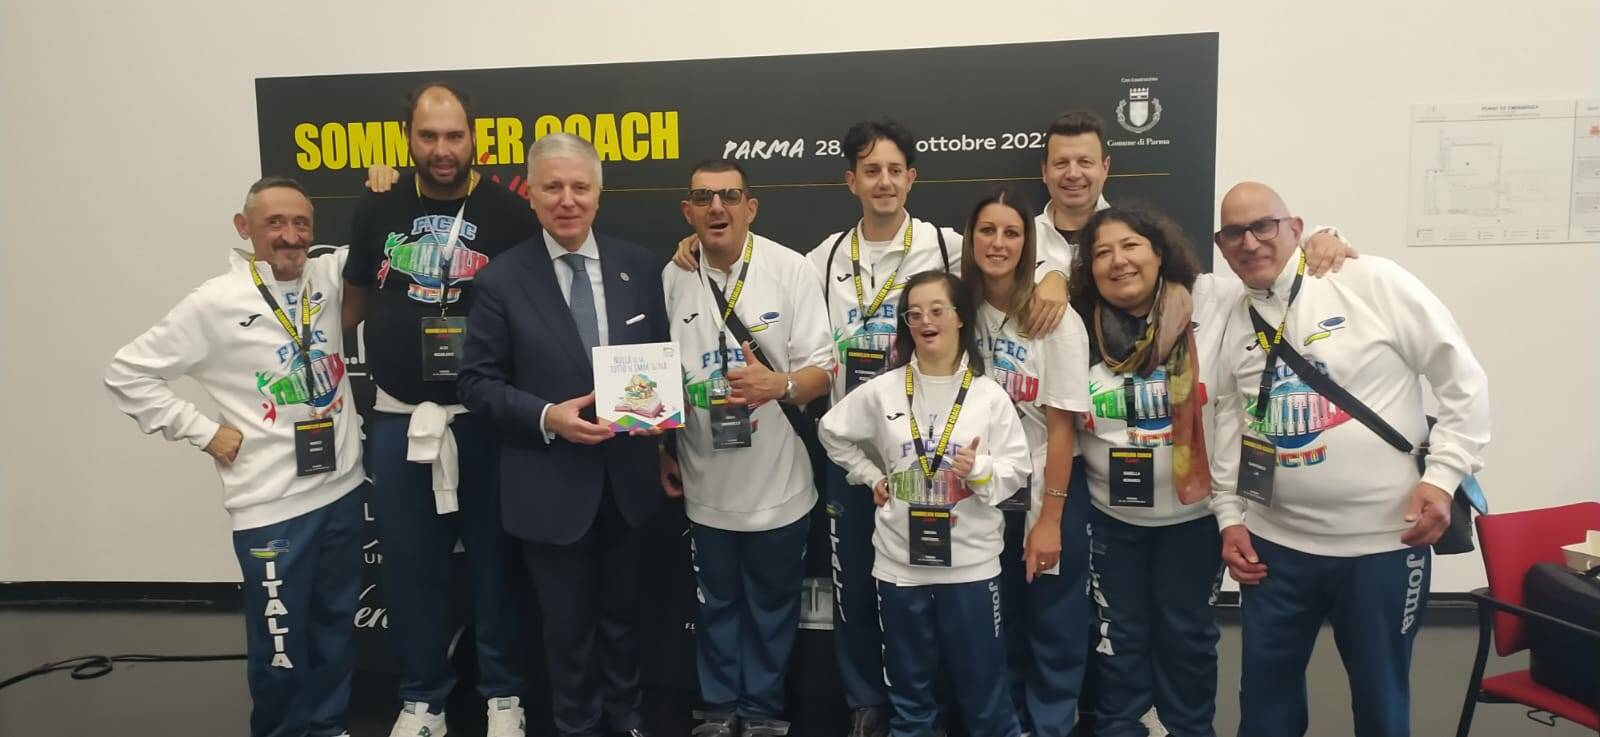 Il Ficec team Italia Icu categoria special premiato al Sommelier Coach Live